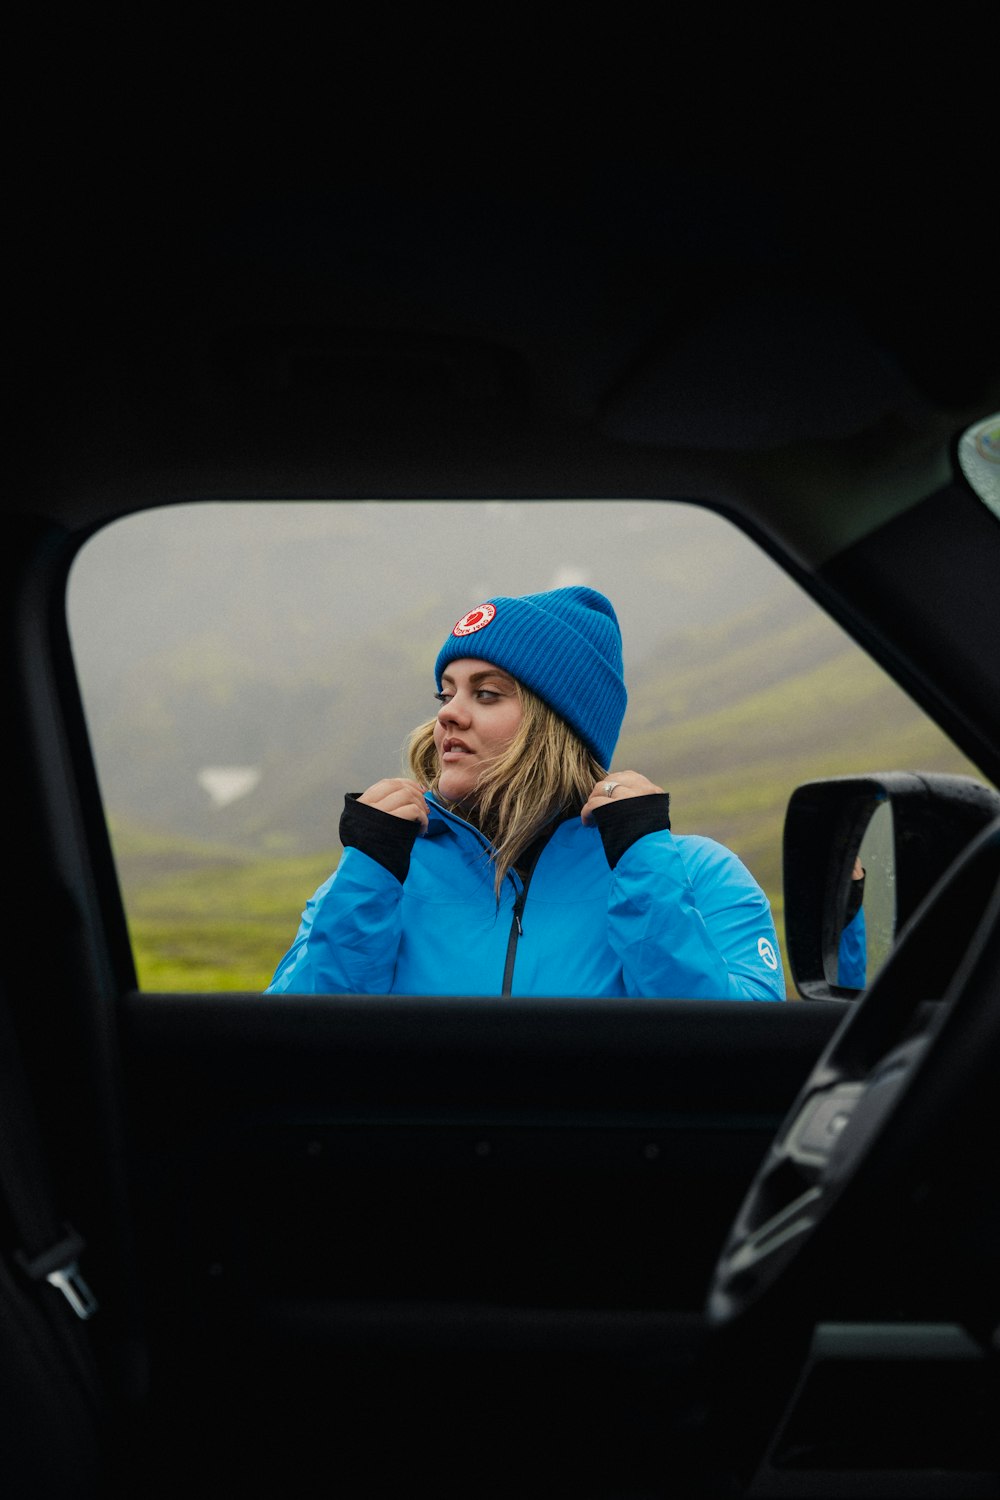 Eine Frau in einer blauen Jacke, die mit einem Handy telefoniert